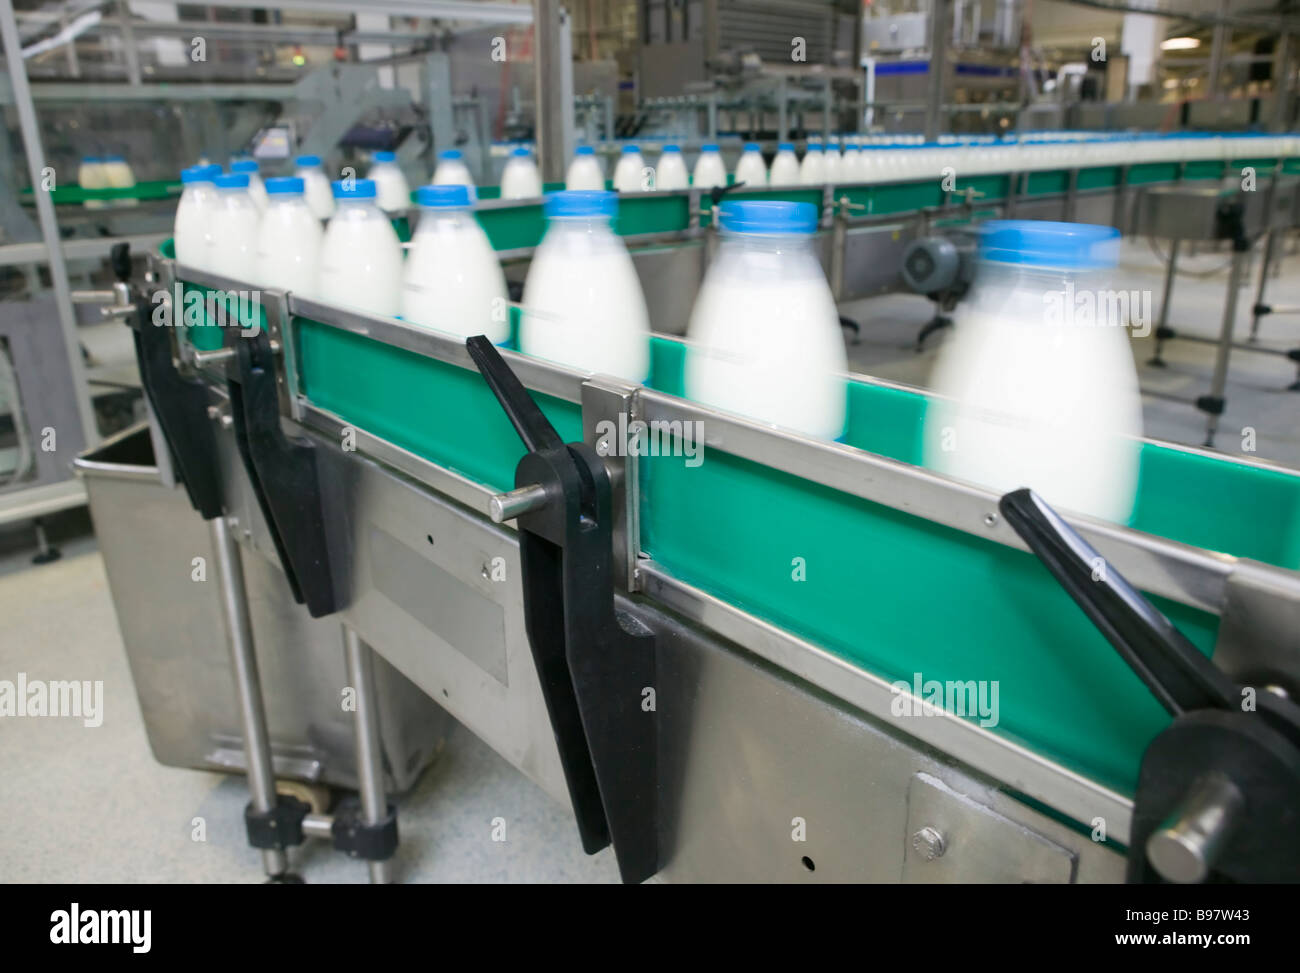 Transportador botellas de leche stock - Alamy